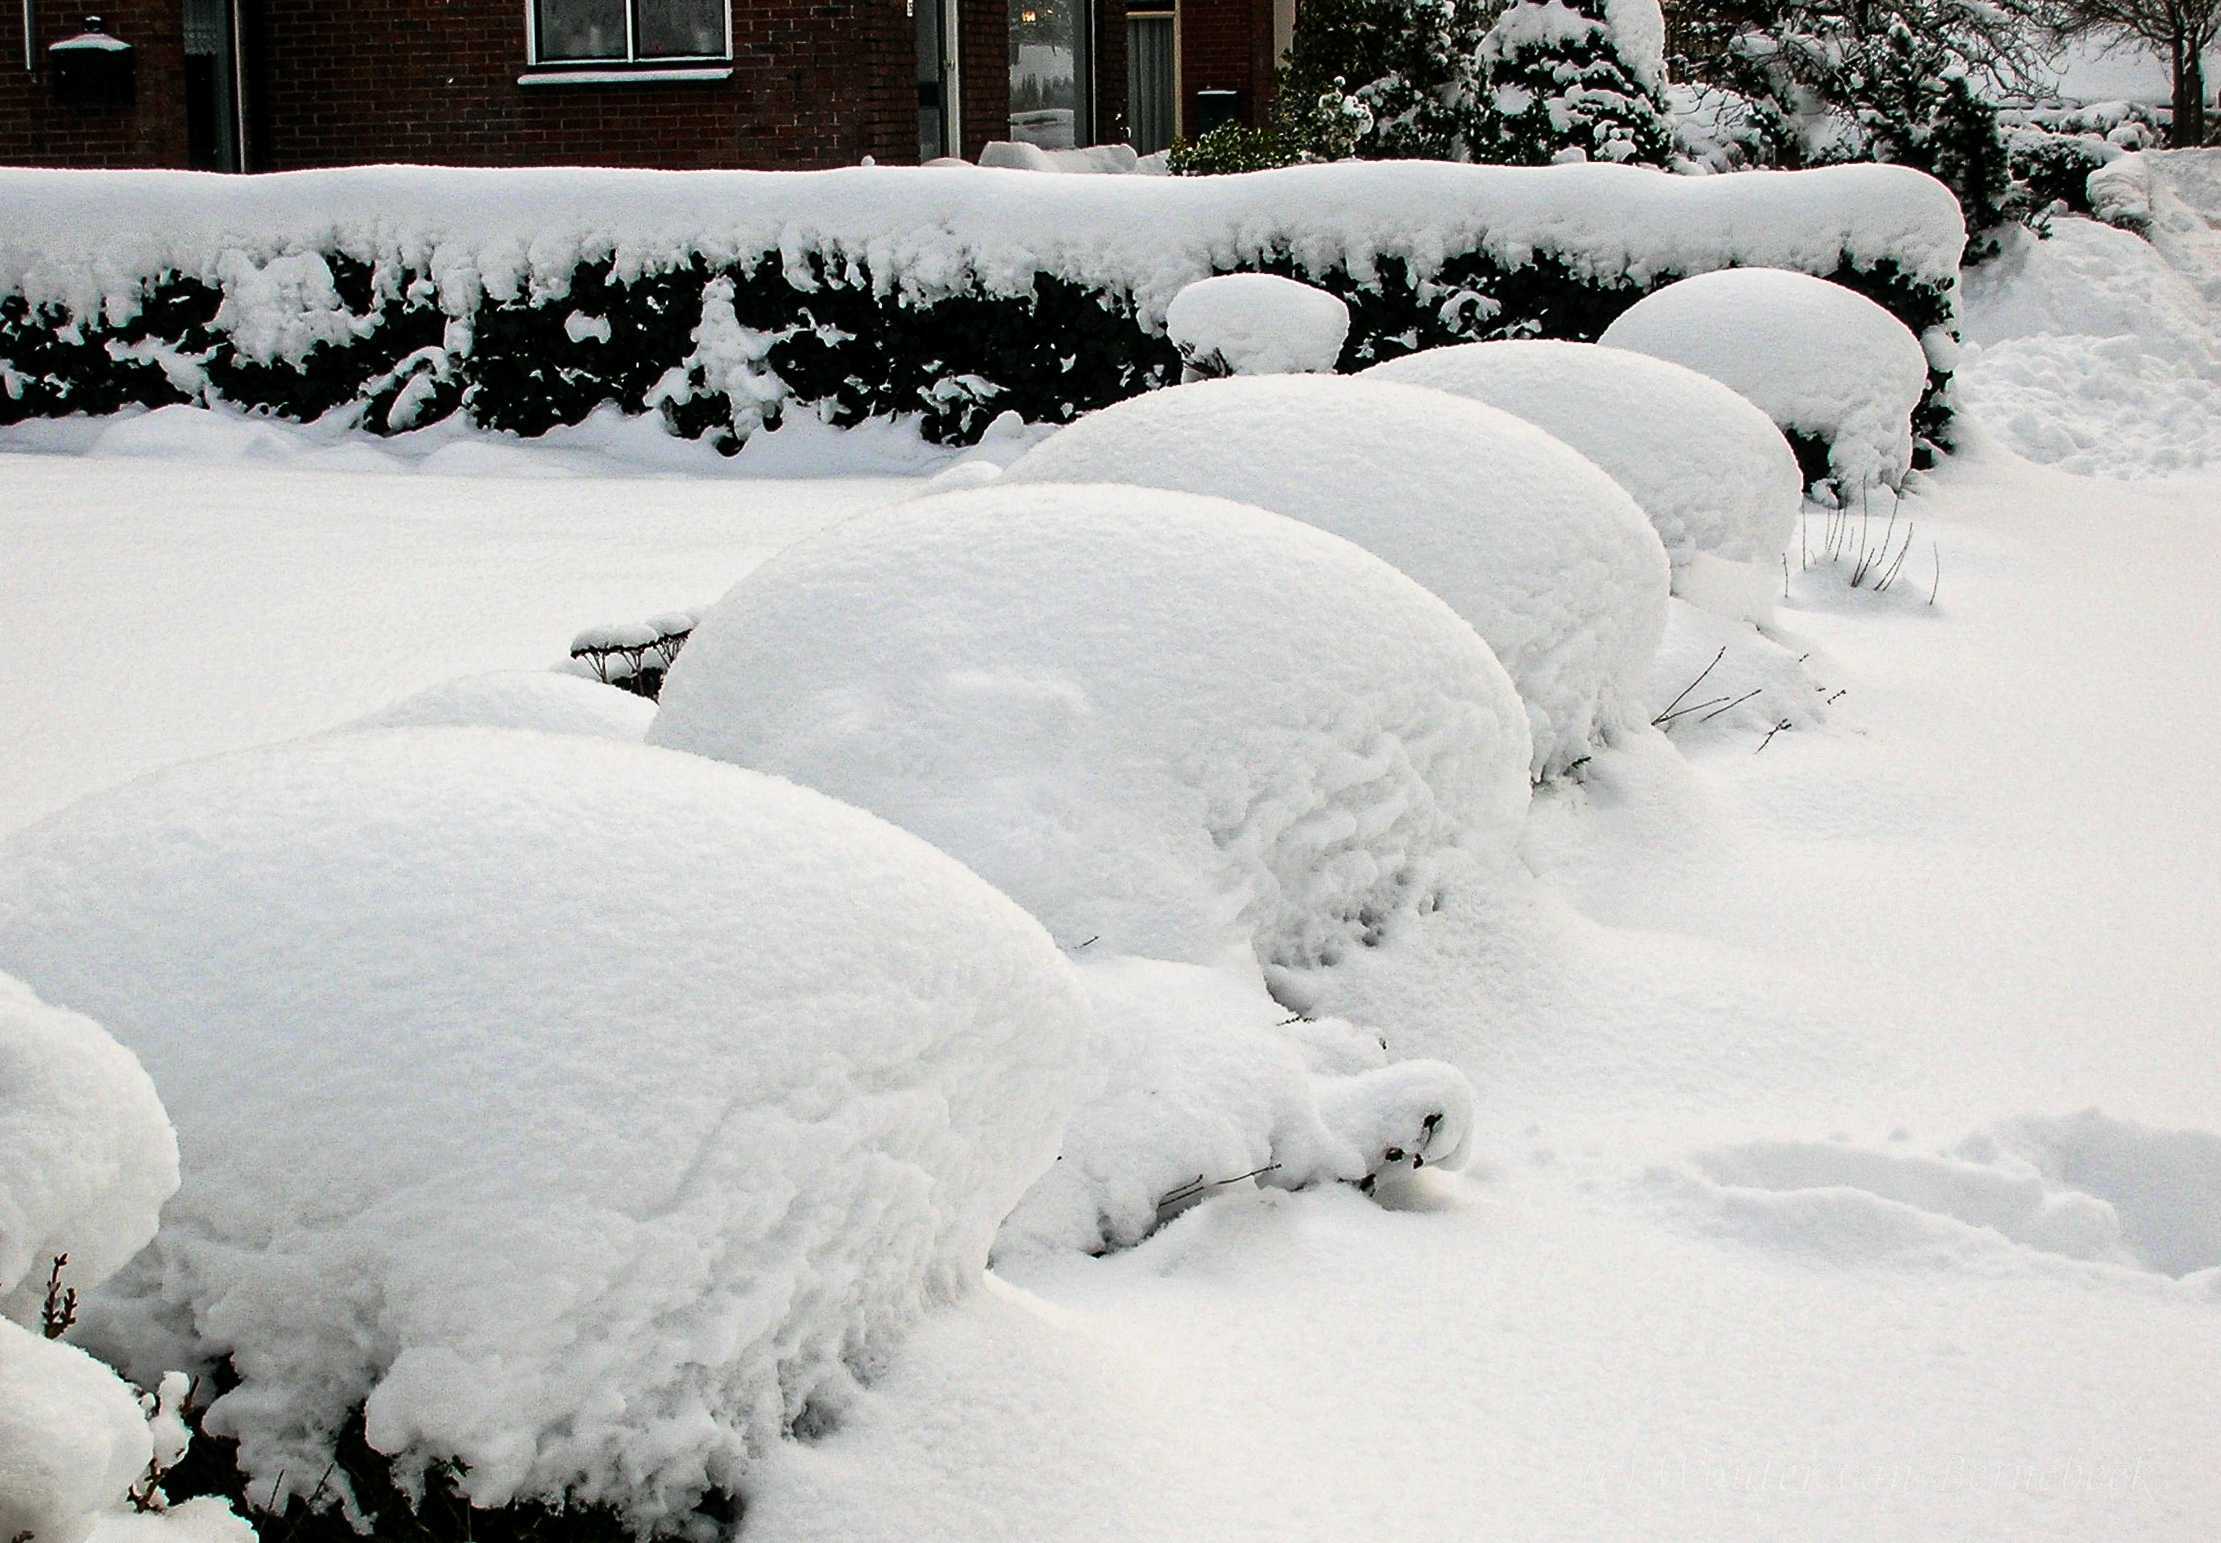 Dik pak sneeuw in december 2009, Ureterp, Friesland. Foto: Wouter van Bernebeek